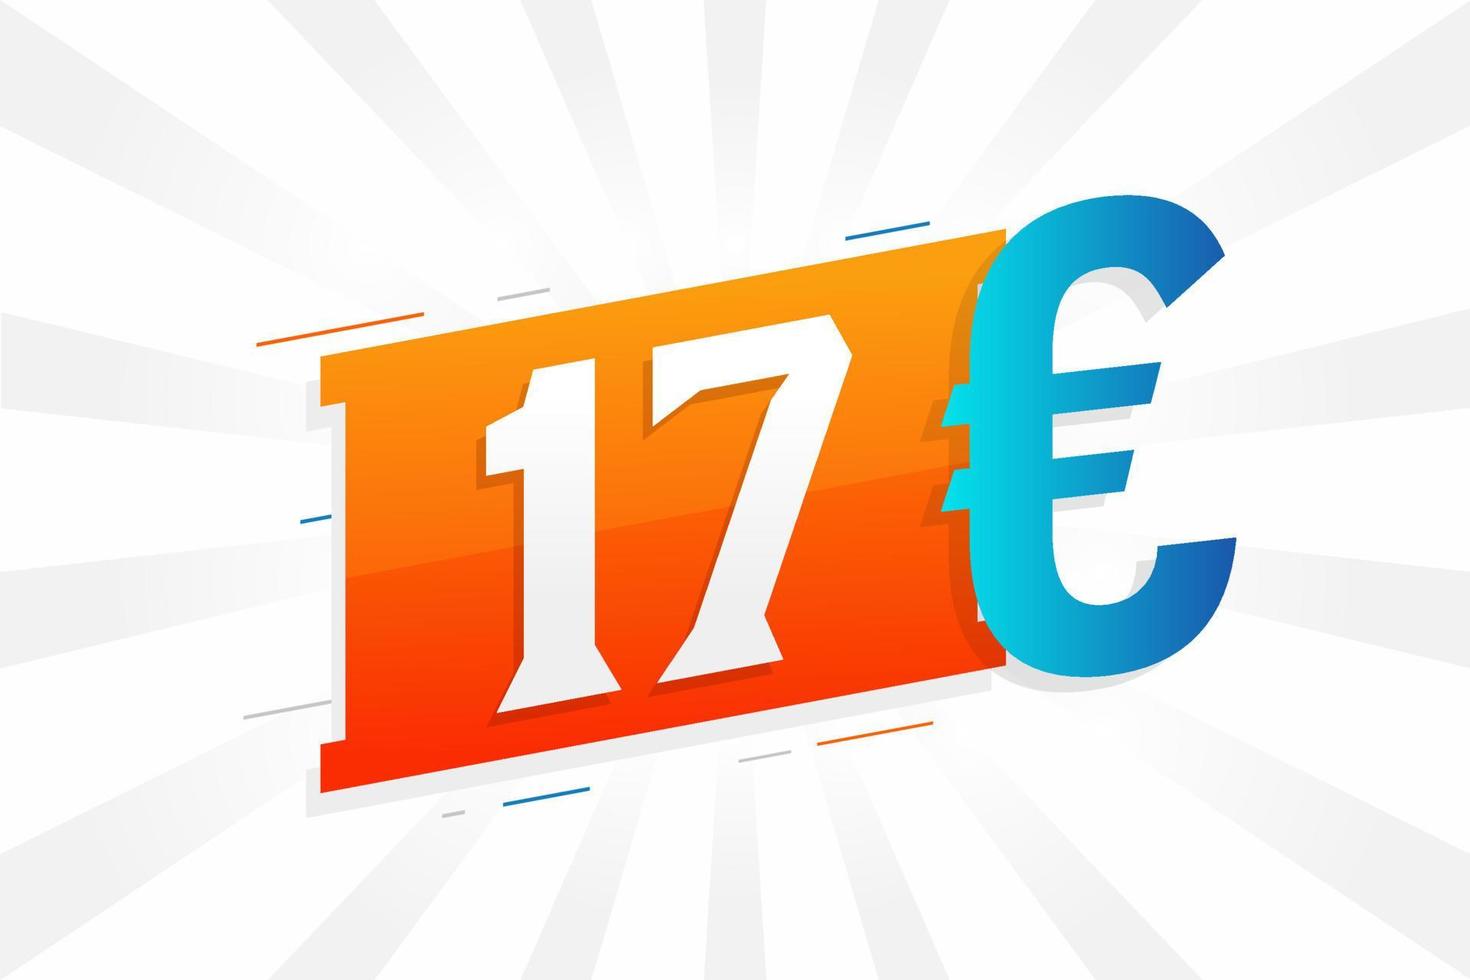 17 Euro Currency vector text symbol. 17 Euro European Union Money stock vector